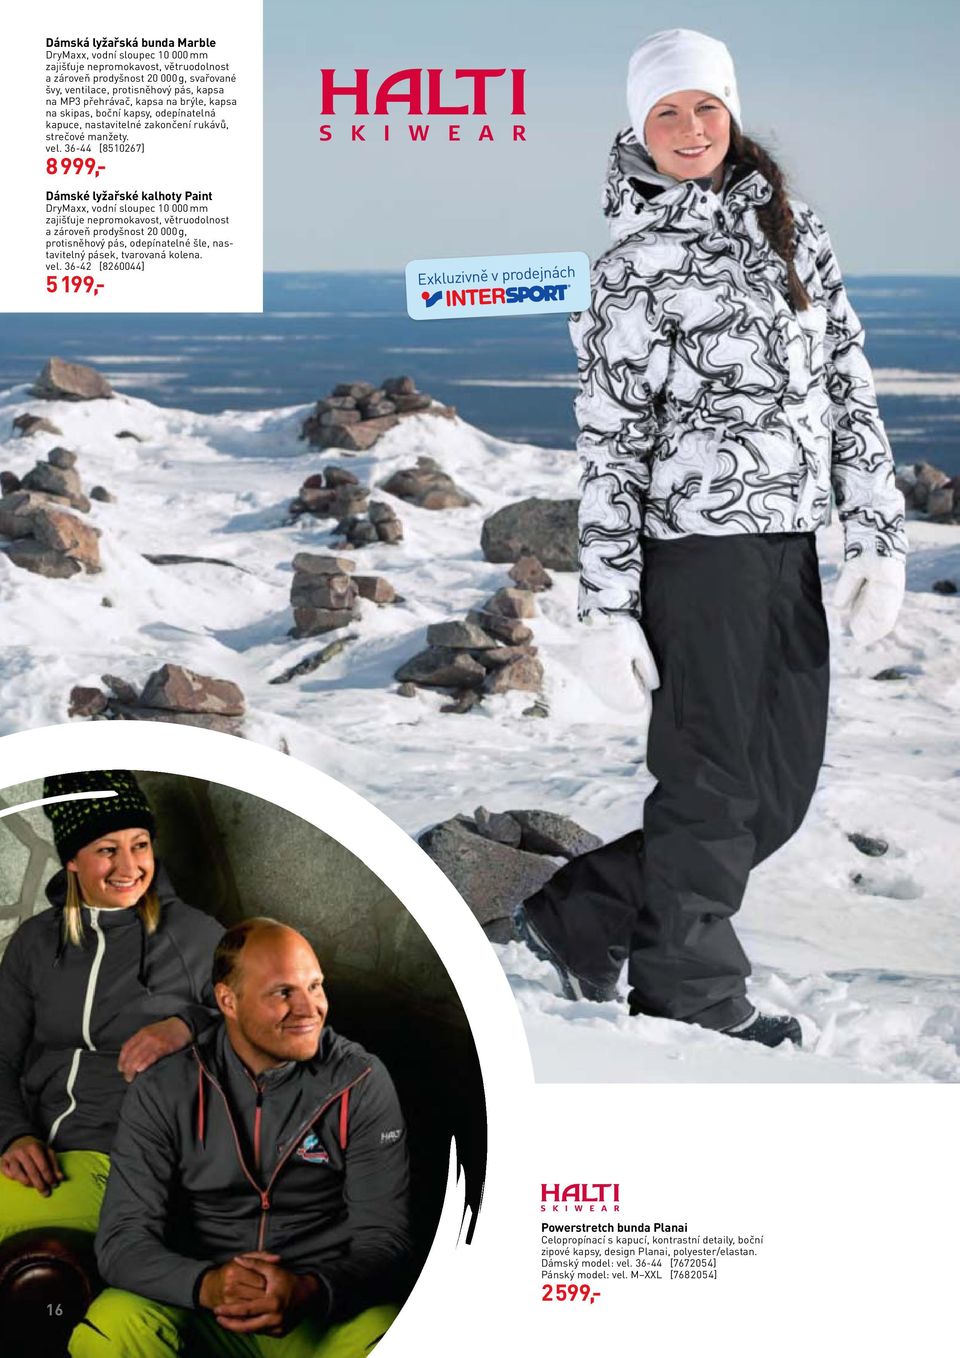 36-44 [8510267] 8 999,- Dámské lyžařské kalhoty Paint DryMaxx, vodní sloupec 10 000 mm zajišťuje nepromokavost, větruodolnost a zároveň prodyšnost 20 000 g, protisněhový pás, odepínatelné šle,